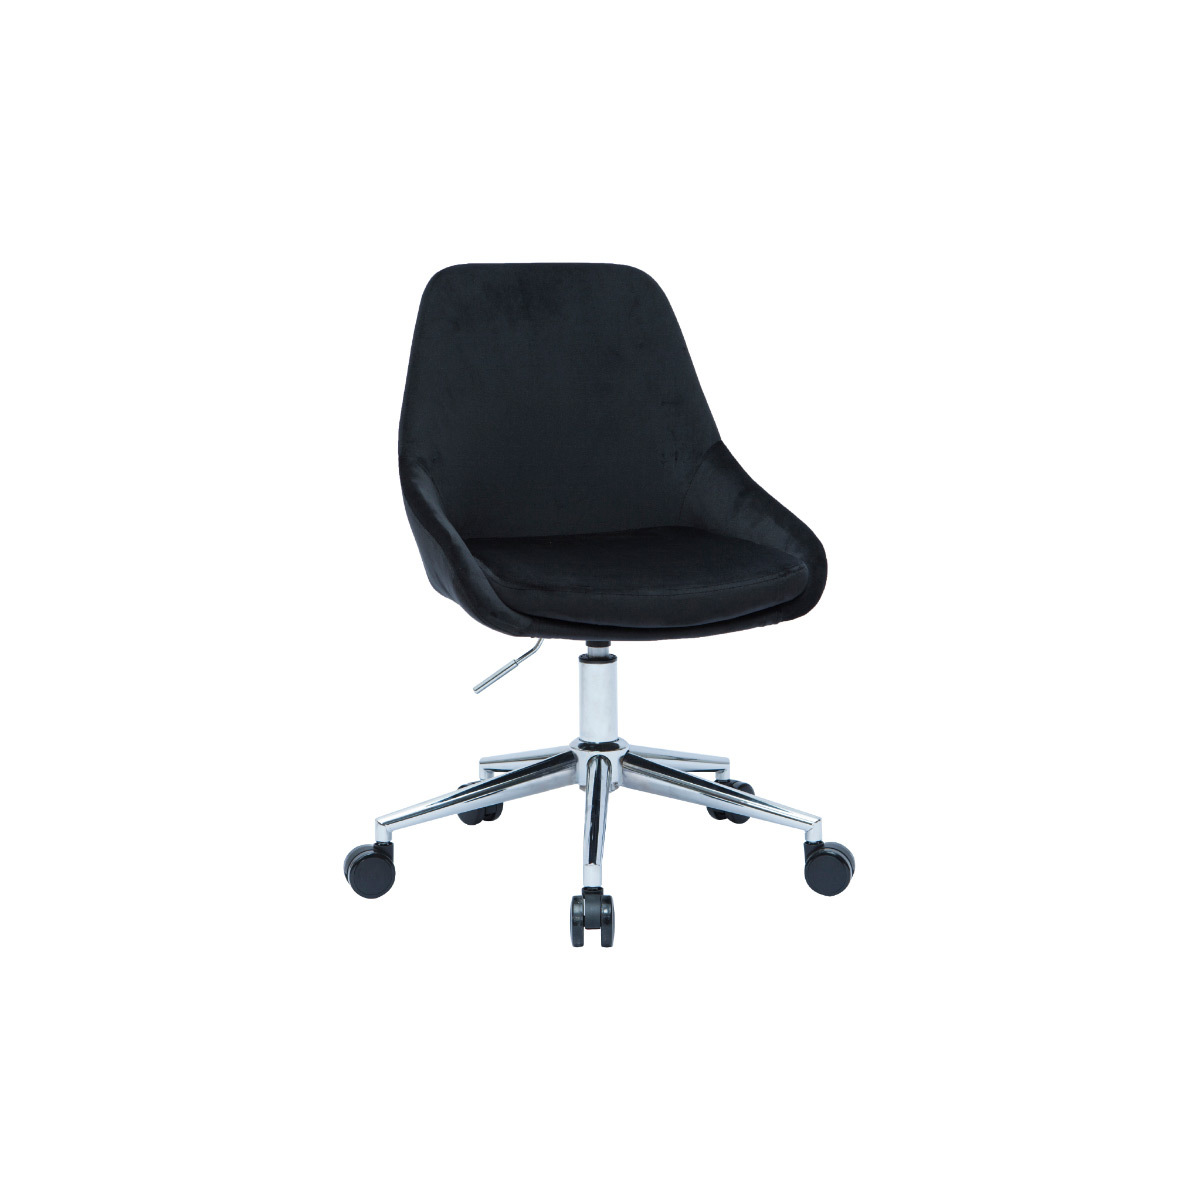 Chaise de bureau design tissu velours noir HOLO vue1